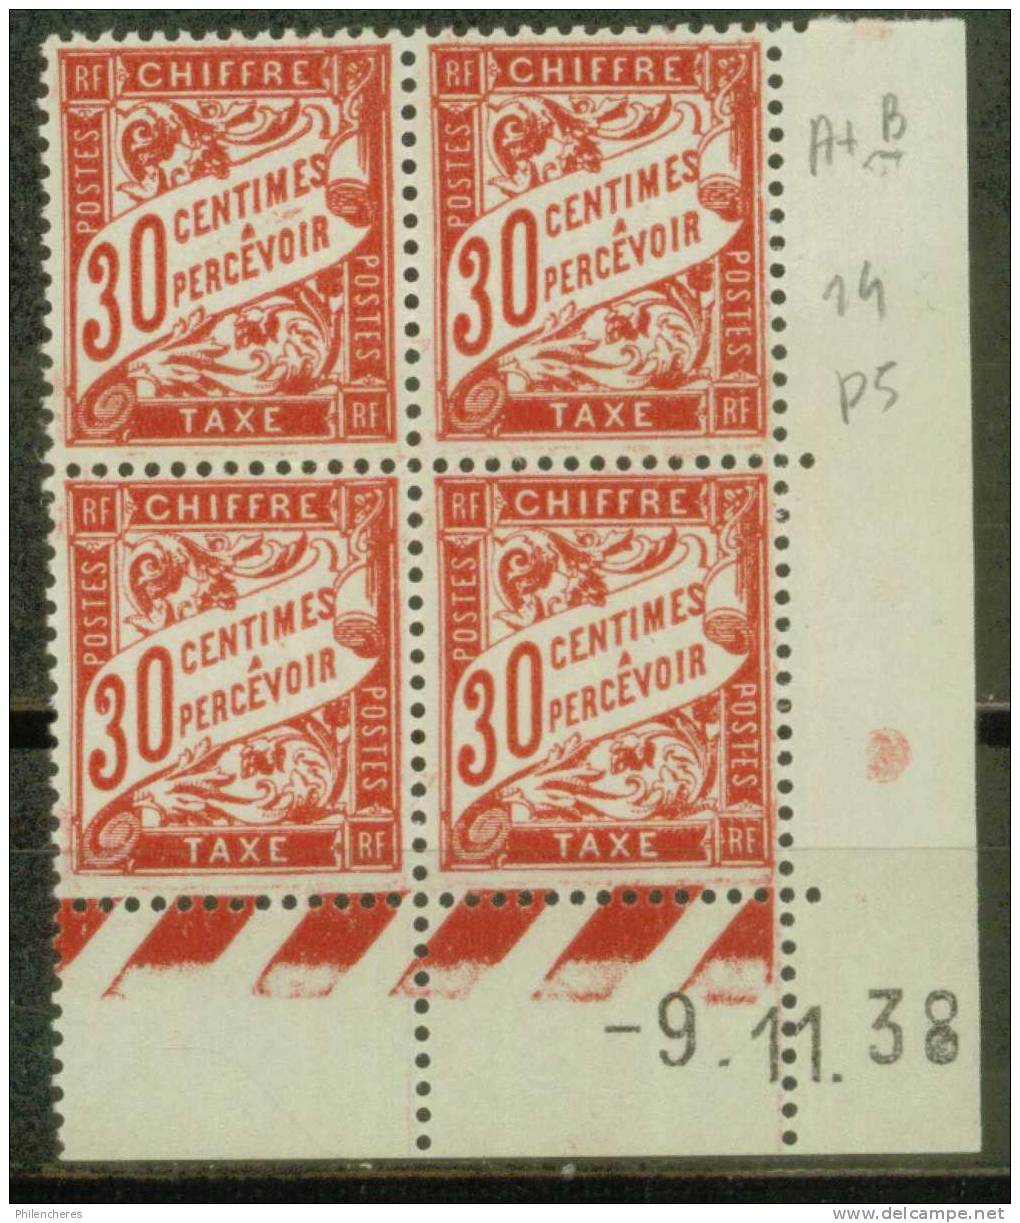 France Bloc De 4 - Coin Daté 1938 - Yvert Taxe N° 33 Xx - Cote 5 Euros - Prix De Départ 2 Euros - Postage Due